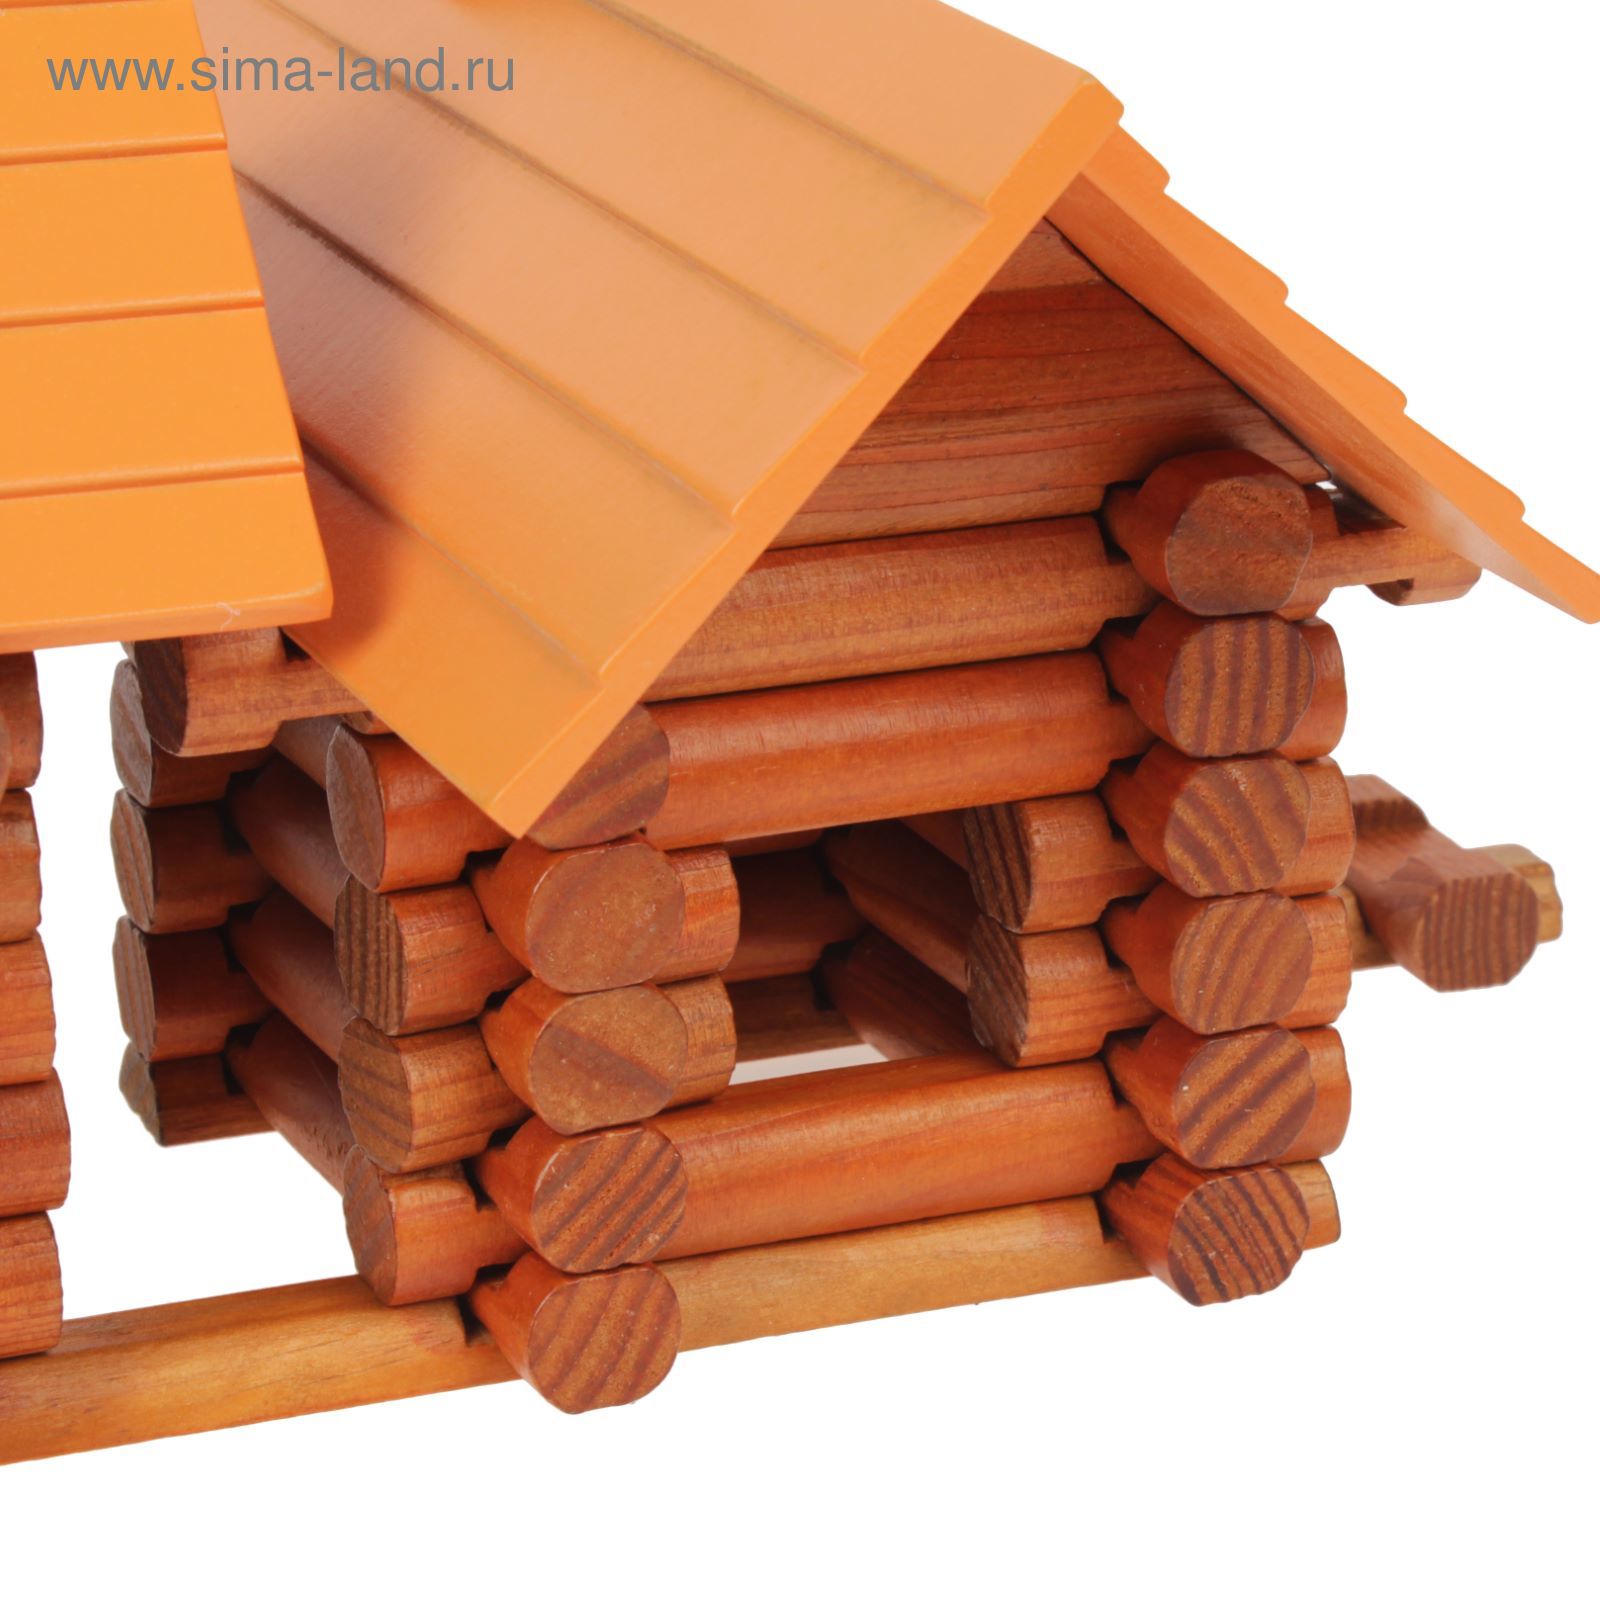 Конструктор деревянный домик из бревен